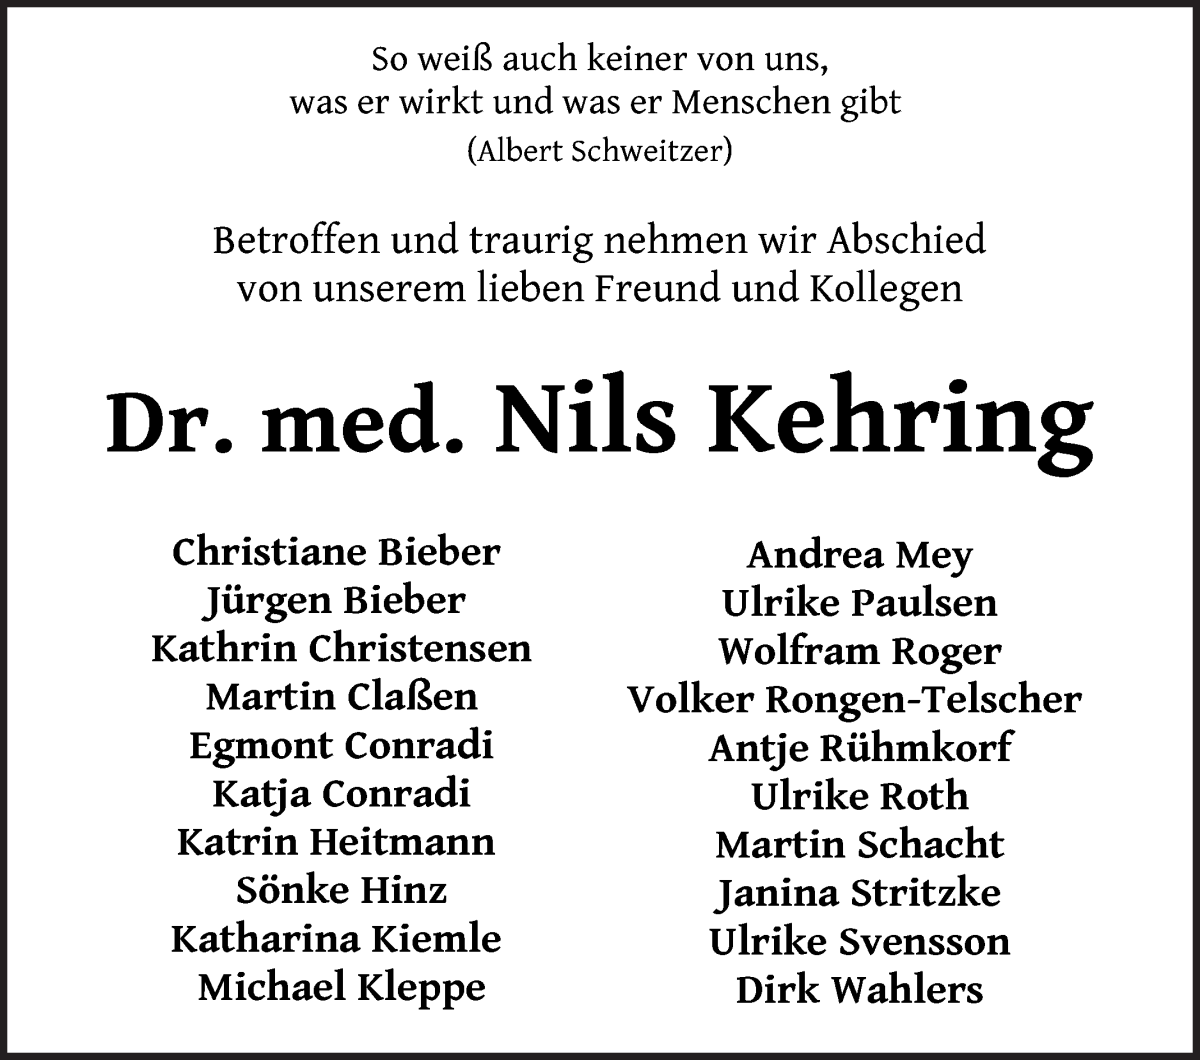 Traueranzeige von Dr. Nils Kehring von WESER-KURIER